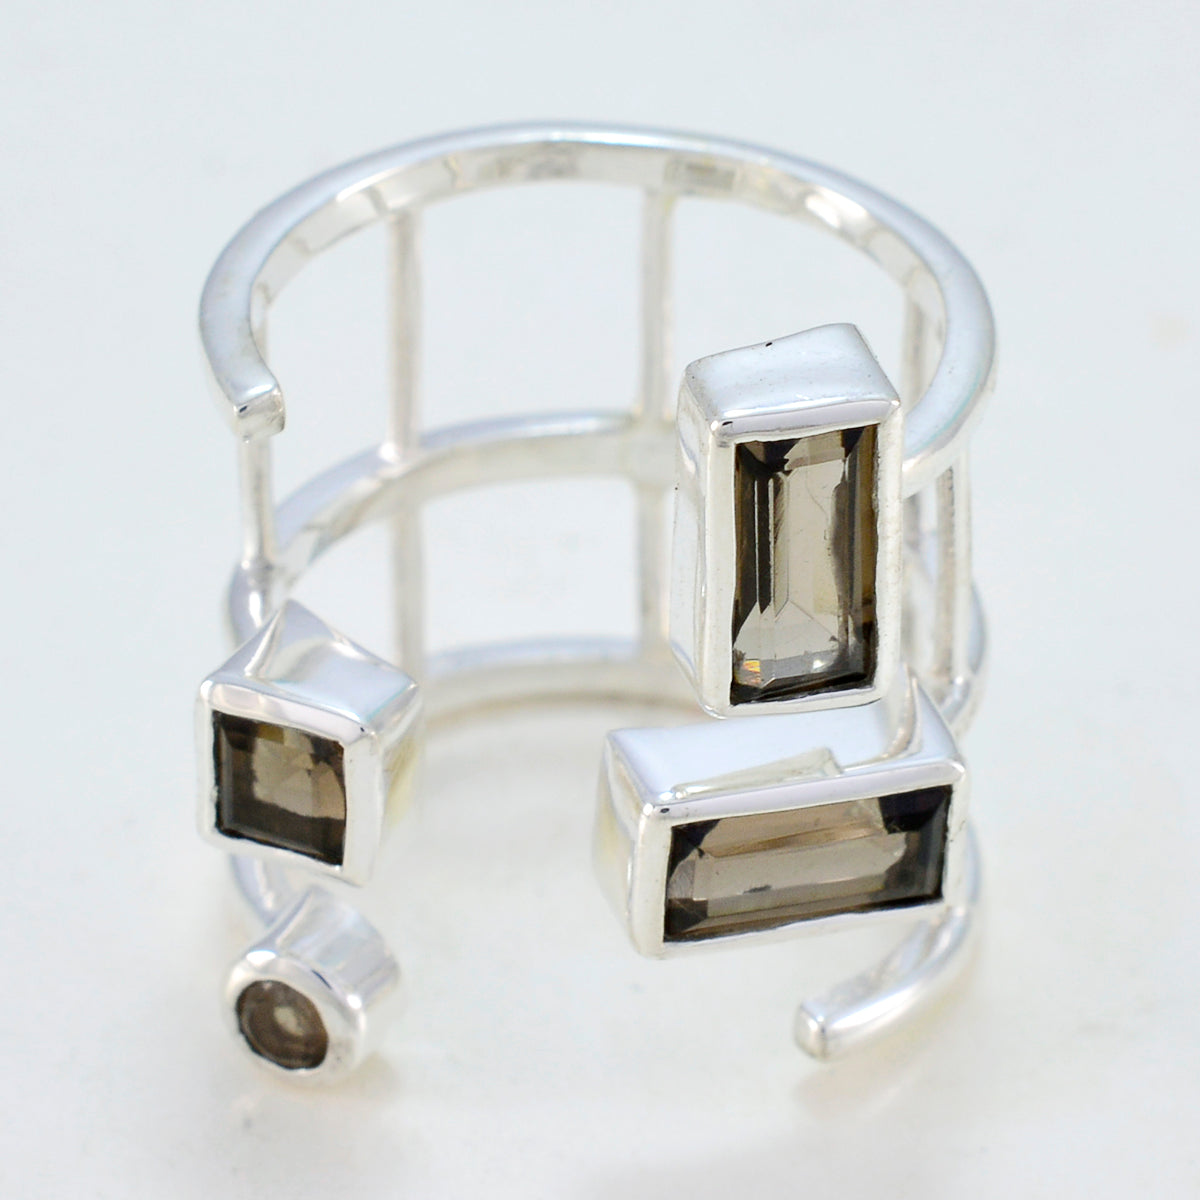 Серебряные кольца riyo nubile с камнем дымчатого кварца, магазины ювелирных изделий Kays